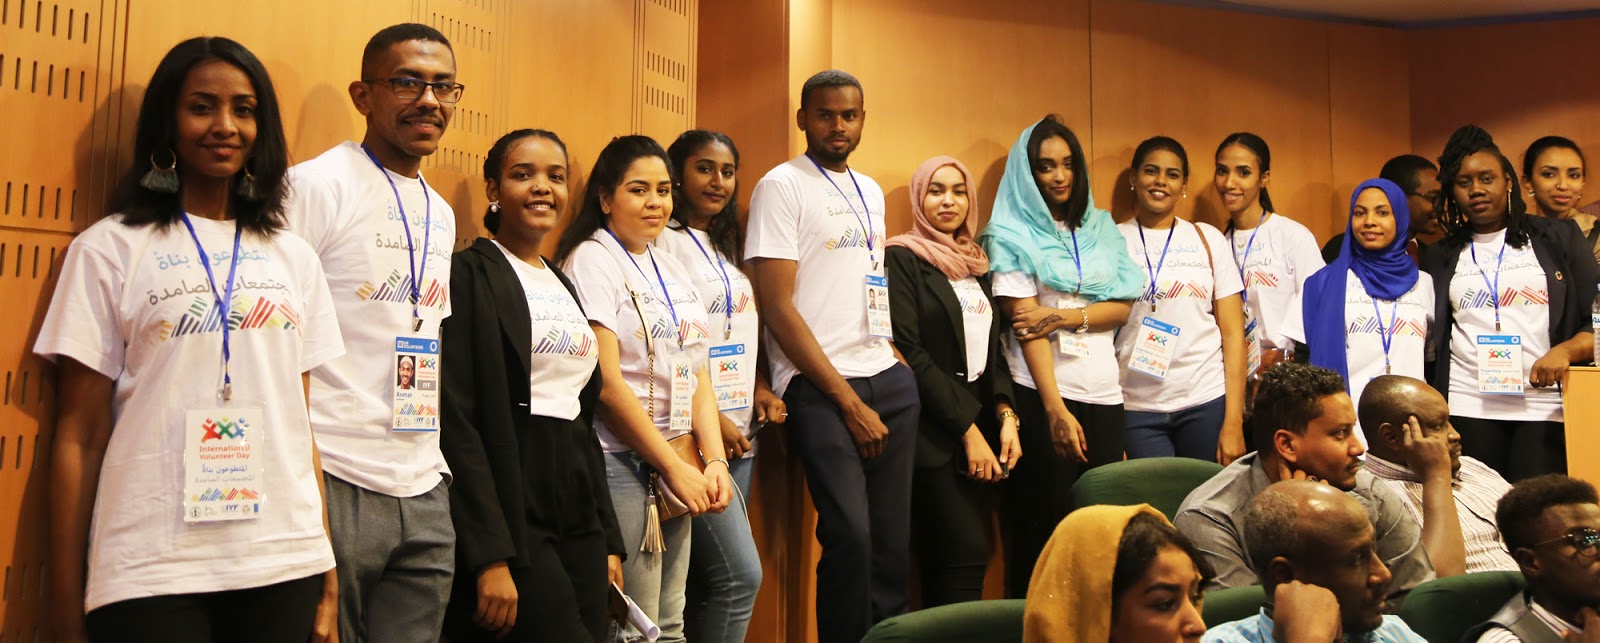 International Youth Federation in Sudan